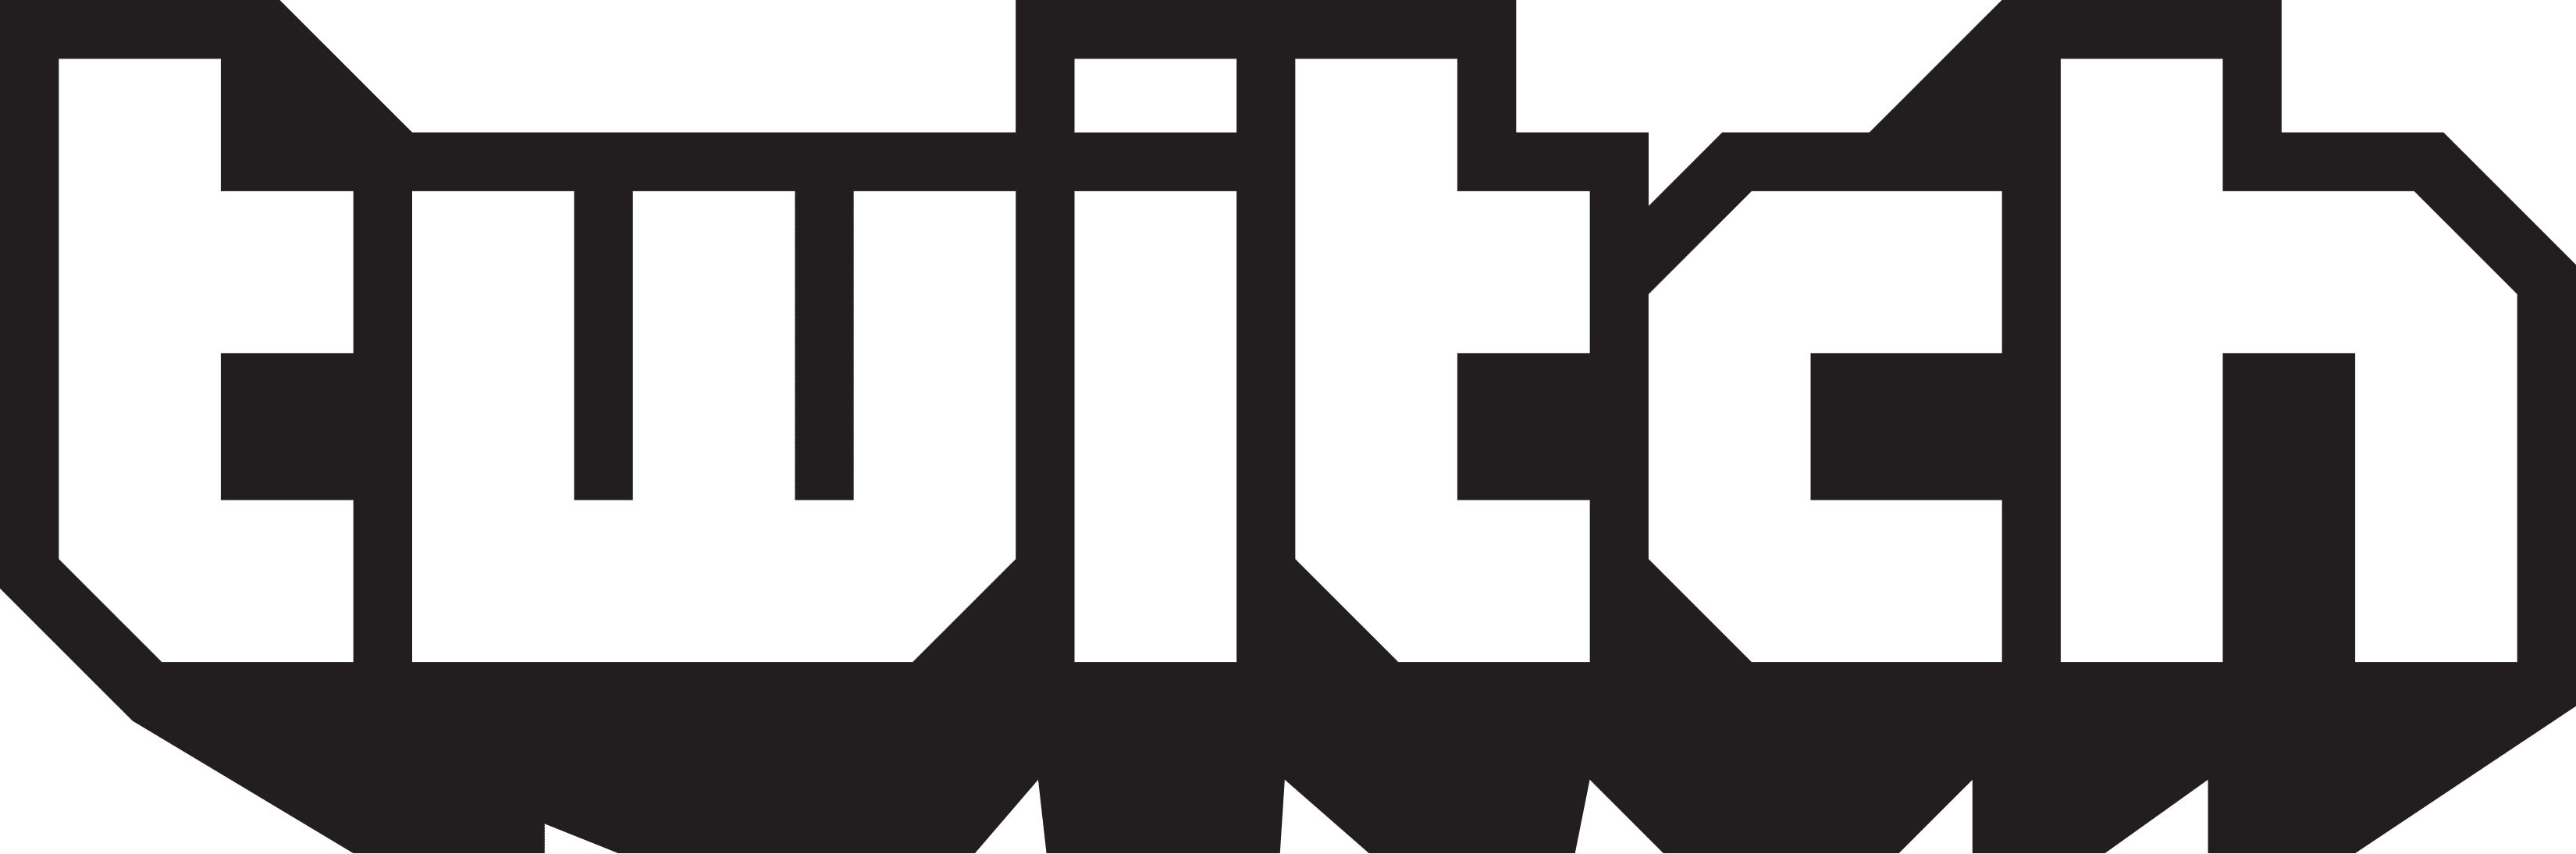 Logo serwisu Twitch